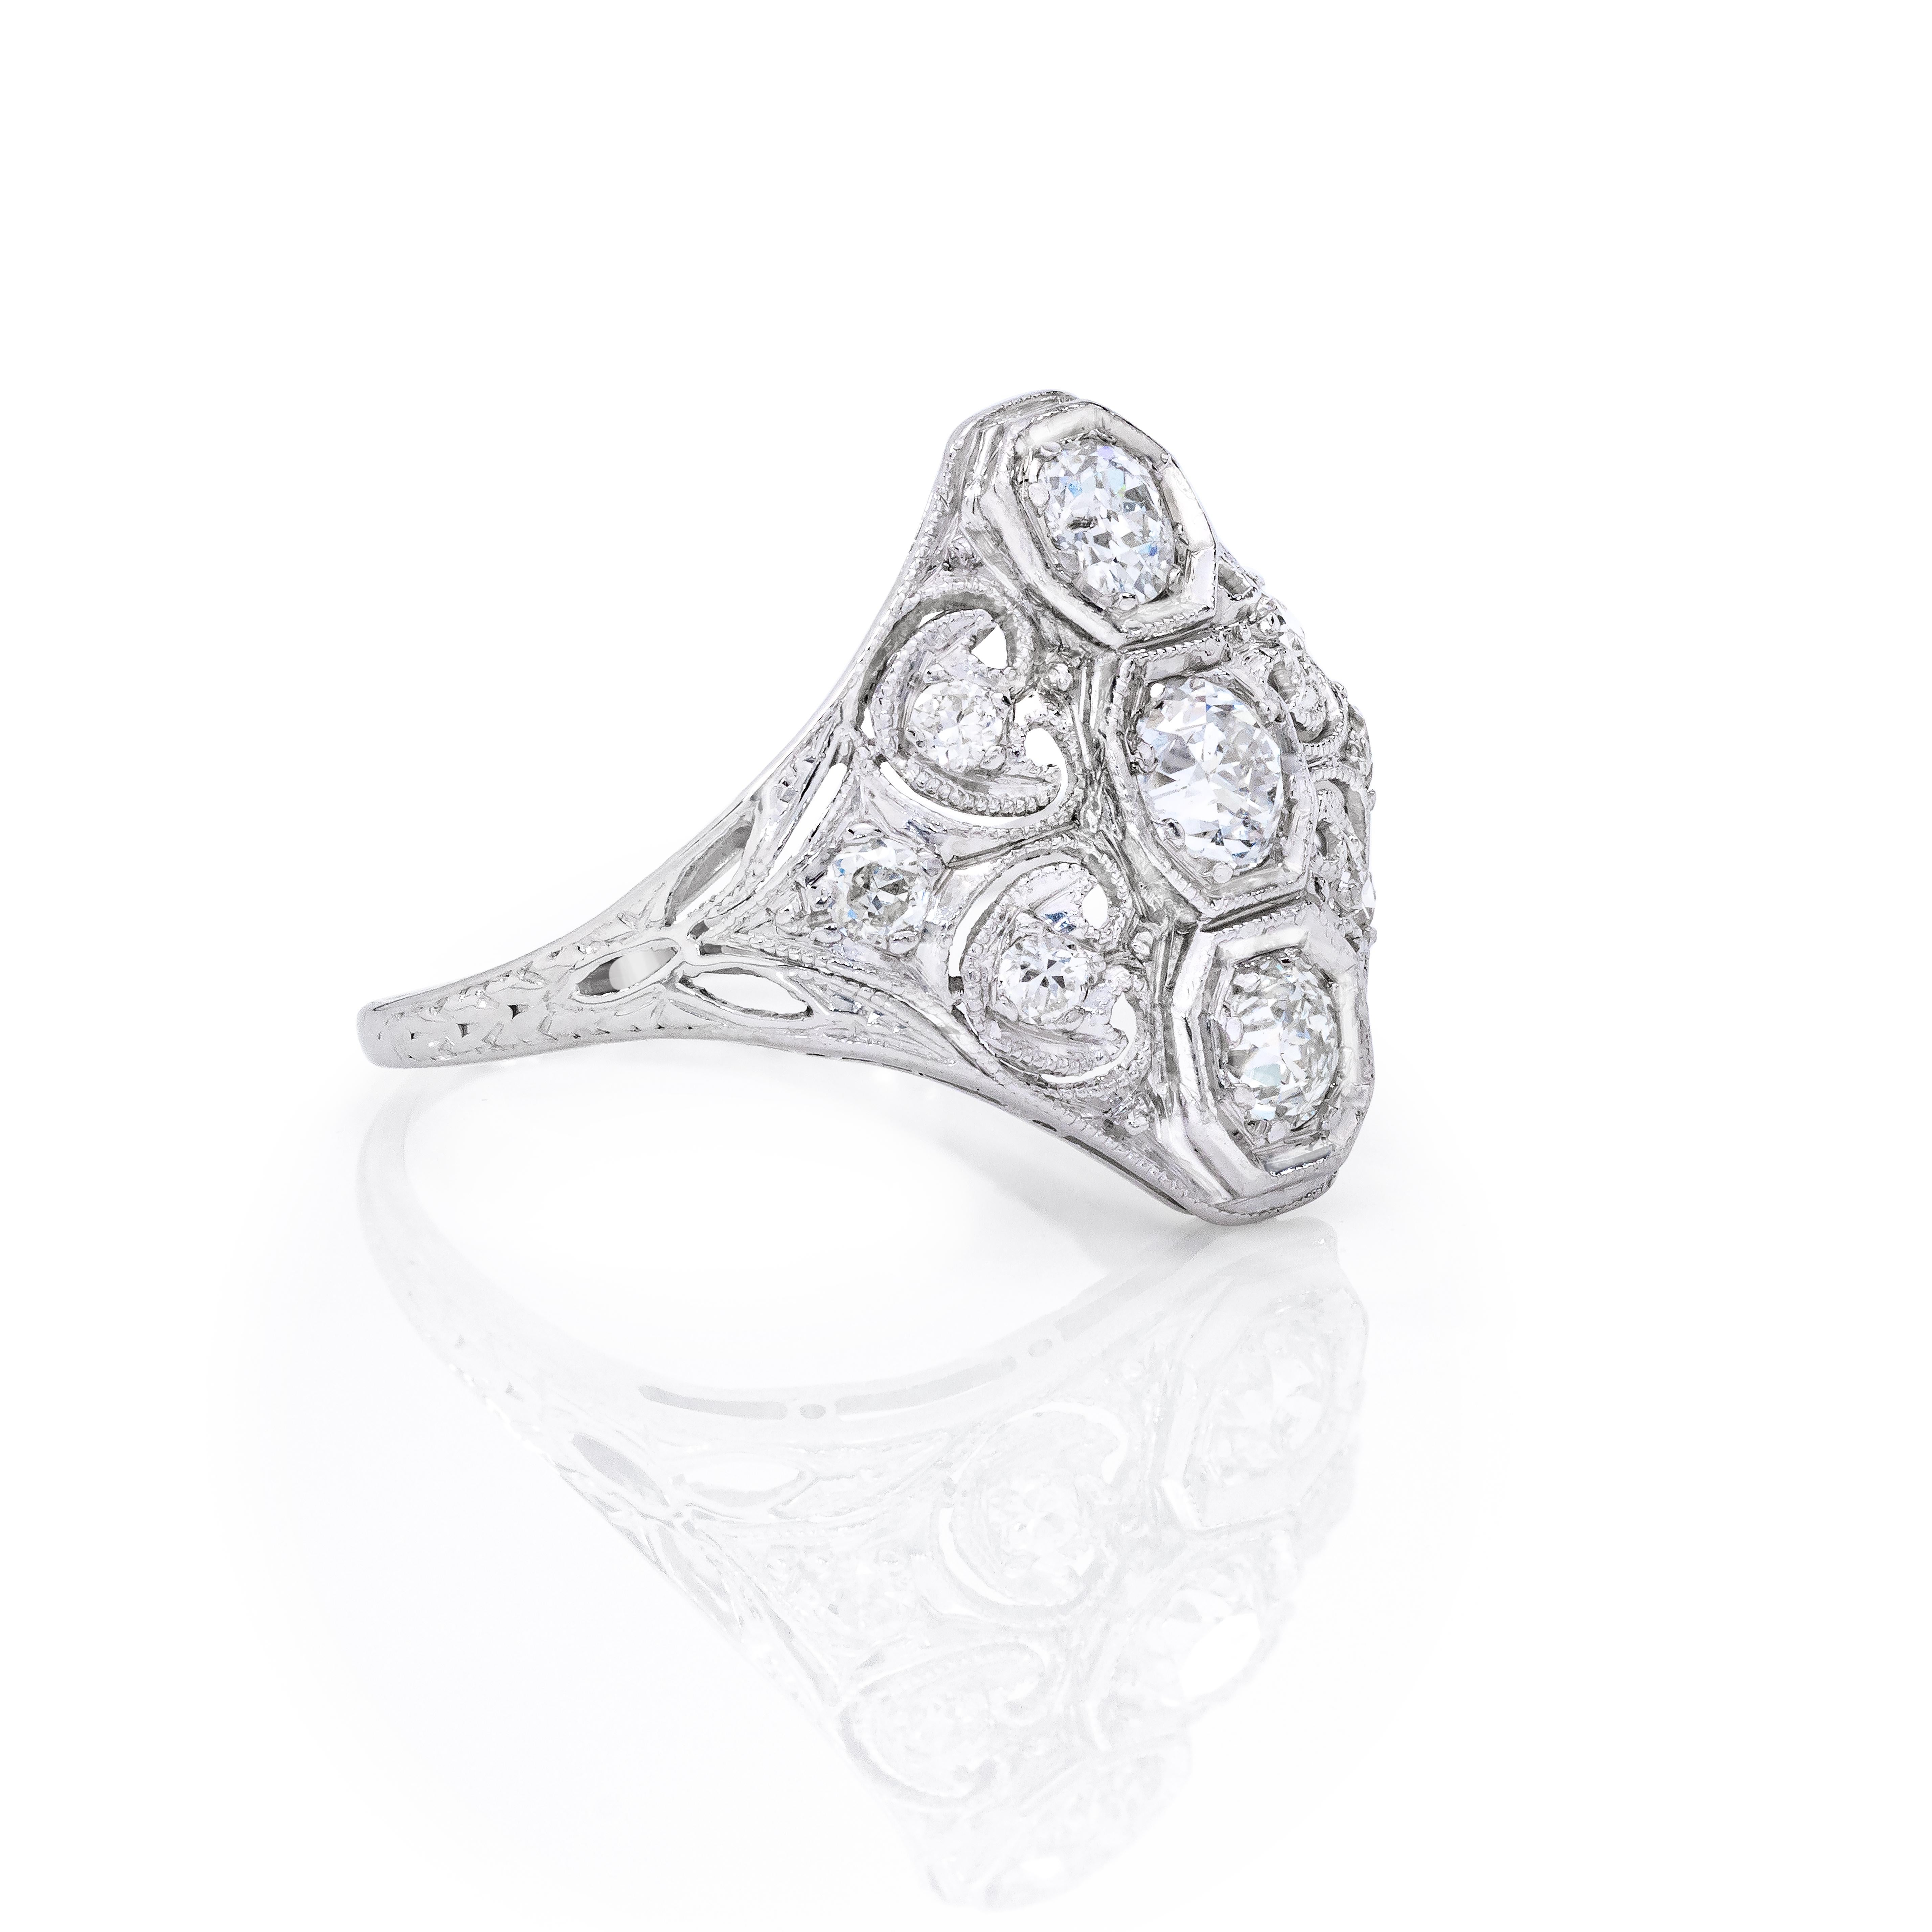 Dies ist ein wunderschöner und unendlich stilvoller Ring, der unglaublich angenehm zu tragen ist.

Ring Details:

3/4 Karat Diamanten
In Platin gefasst
Gesamtgewicht:  3.2 Gramm

Abmessungen:  16.4 mm unterhalb des Fingers

Ringgröße:  5